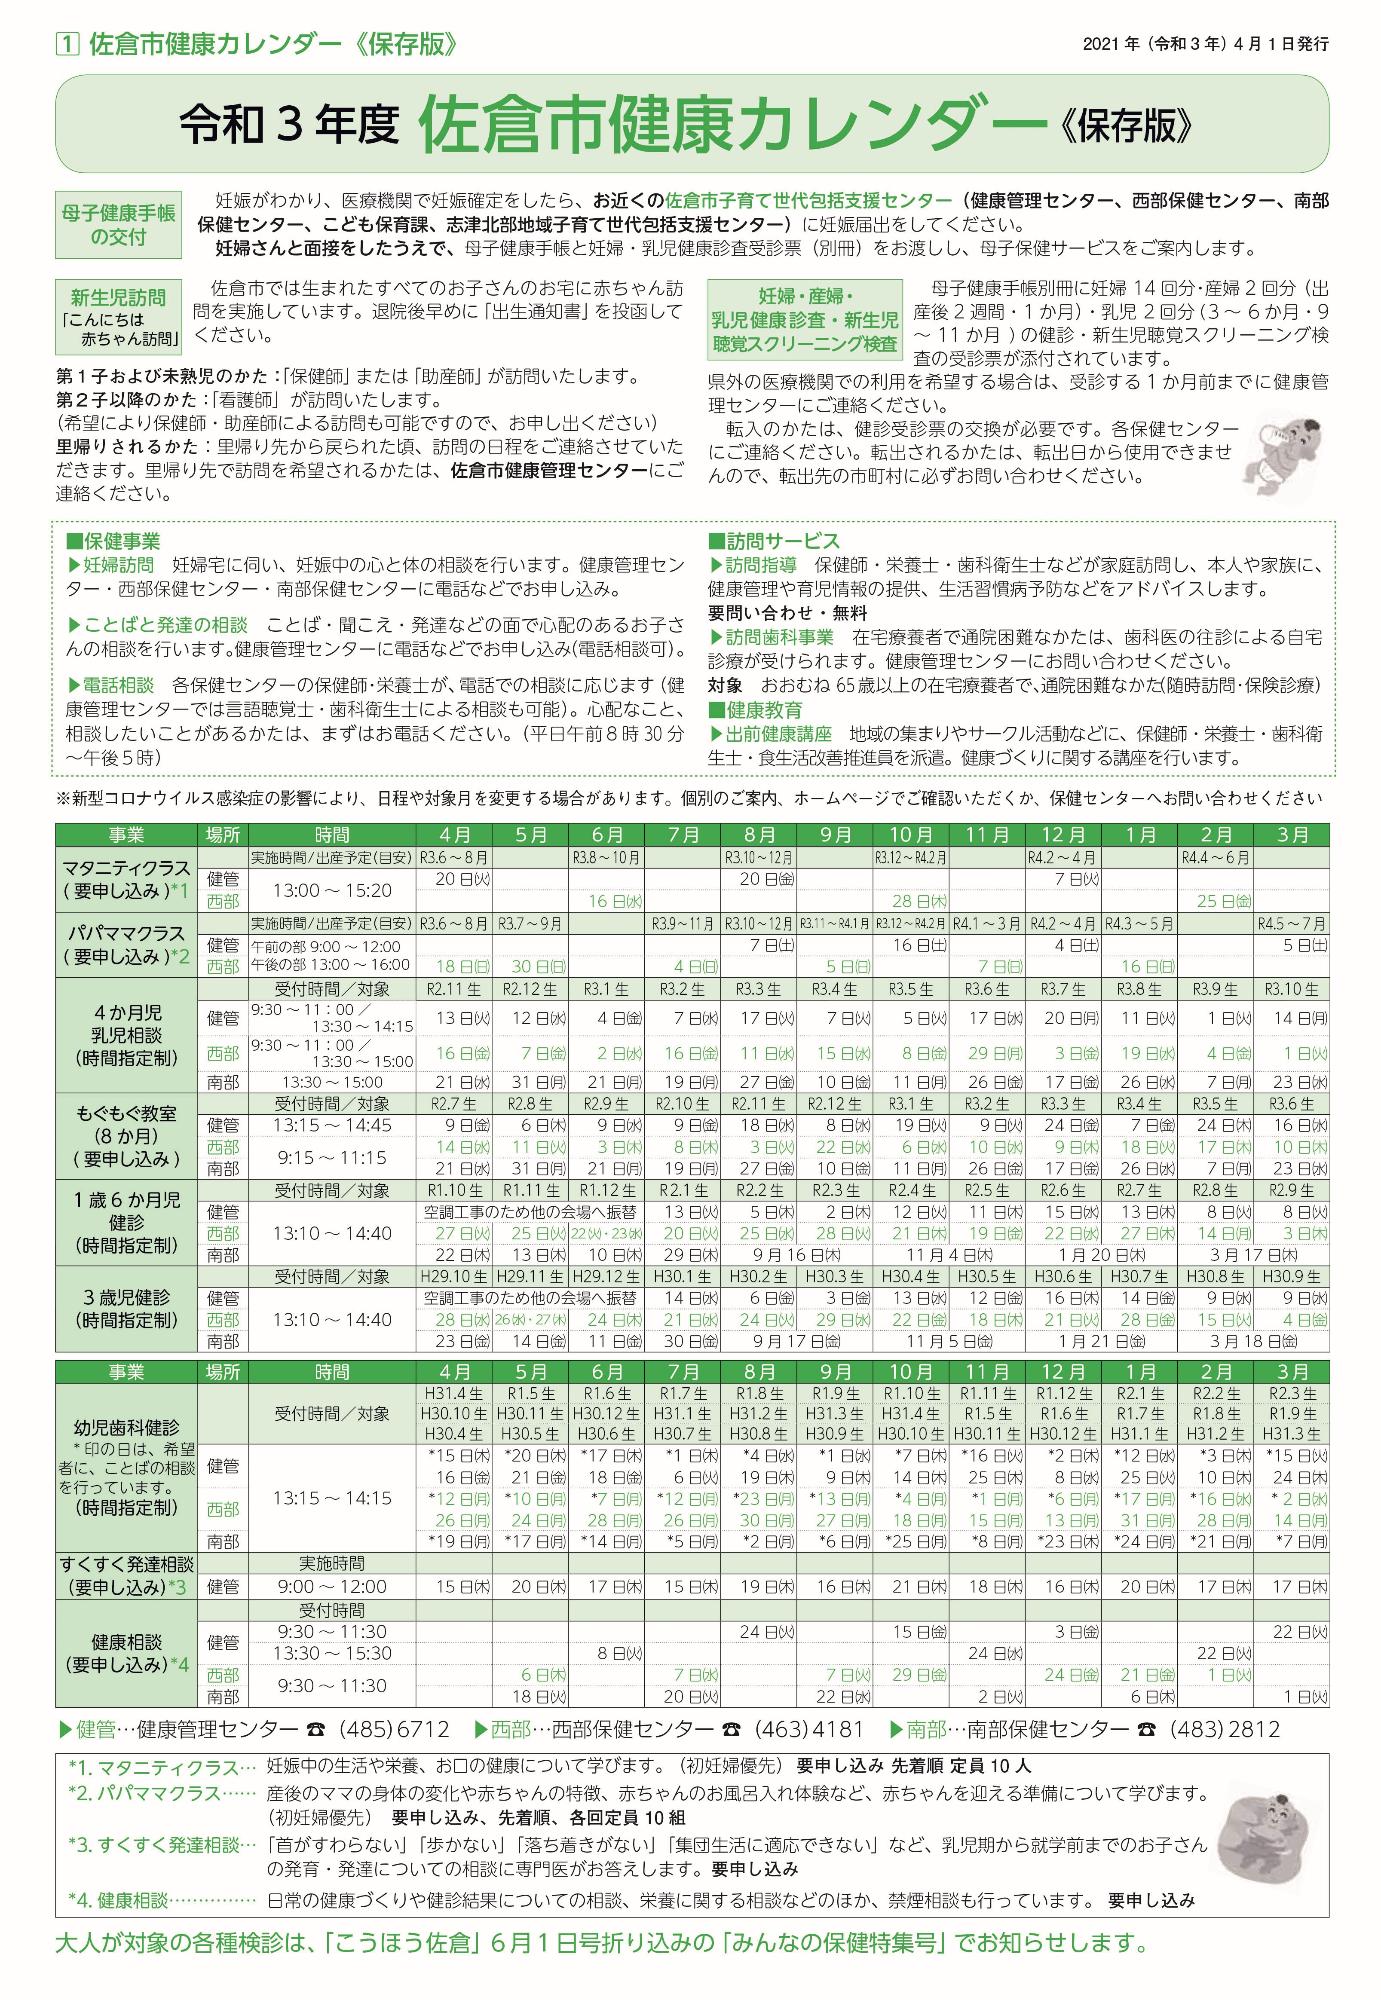 令和3年度佐倉市健康カレンダー 表紙